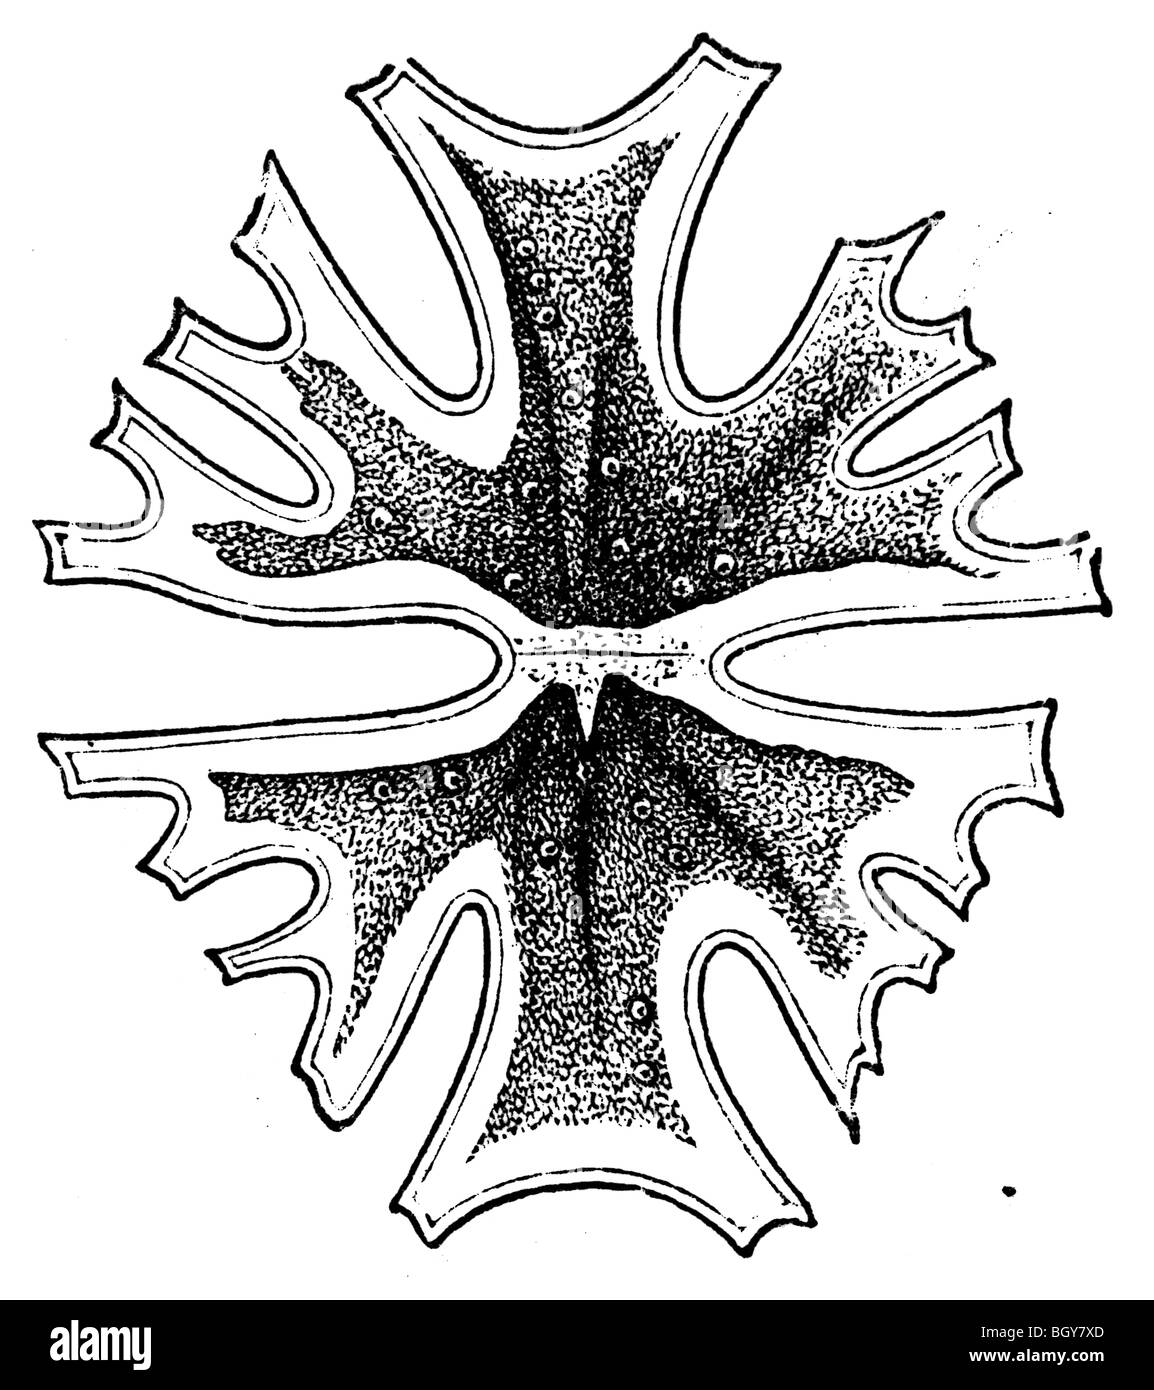 Euastrum crux melitensis, algue Banque D'Images